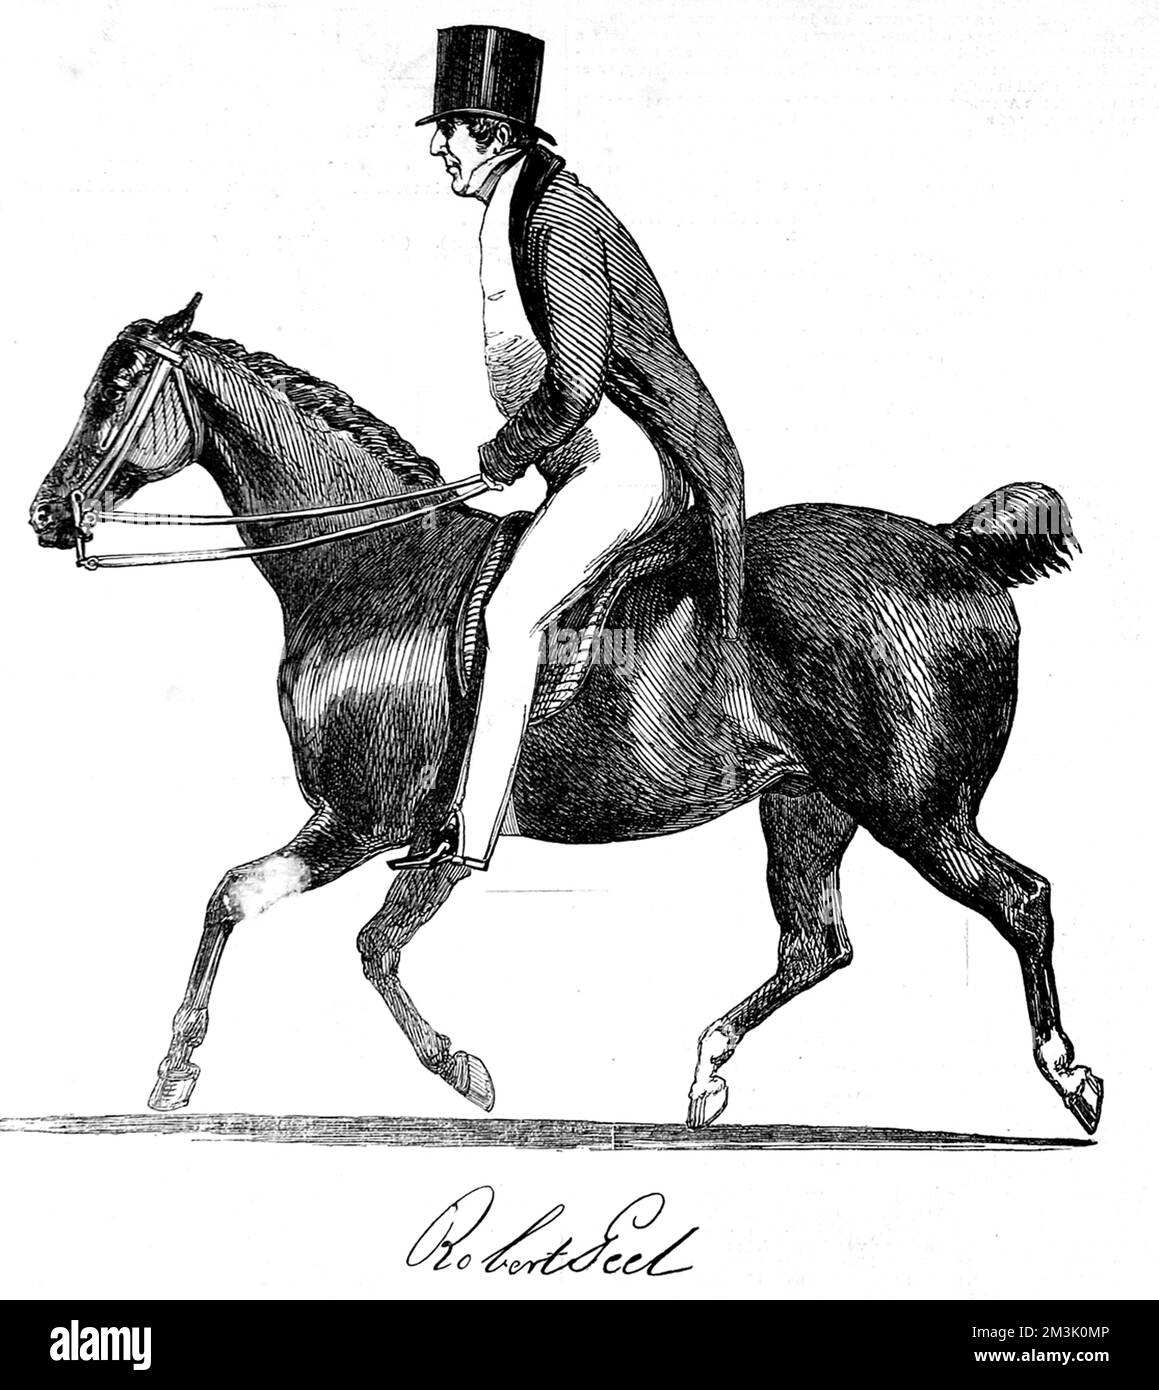 Sir Robert Peel (1788 - 1850), homme d'État anglais et premier ministre, à cheval. Peel était un député conservateur qui avait des vues fortes sur le catholicisme irlandais et le libre-échange contre le protectionnisme, mais il est probablement préférable de se rappeler pour avoir organisé la police de Londres dans les années 1820. Pendant longtemps, les policiers britanniques ont été surnommés « peelers » ou « Bobbies » en référence à Robert Peel. Le 29th juin 1850, Peel a été jeté de son cheval et a subi des blessures mortelles. Banque D'Images